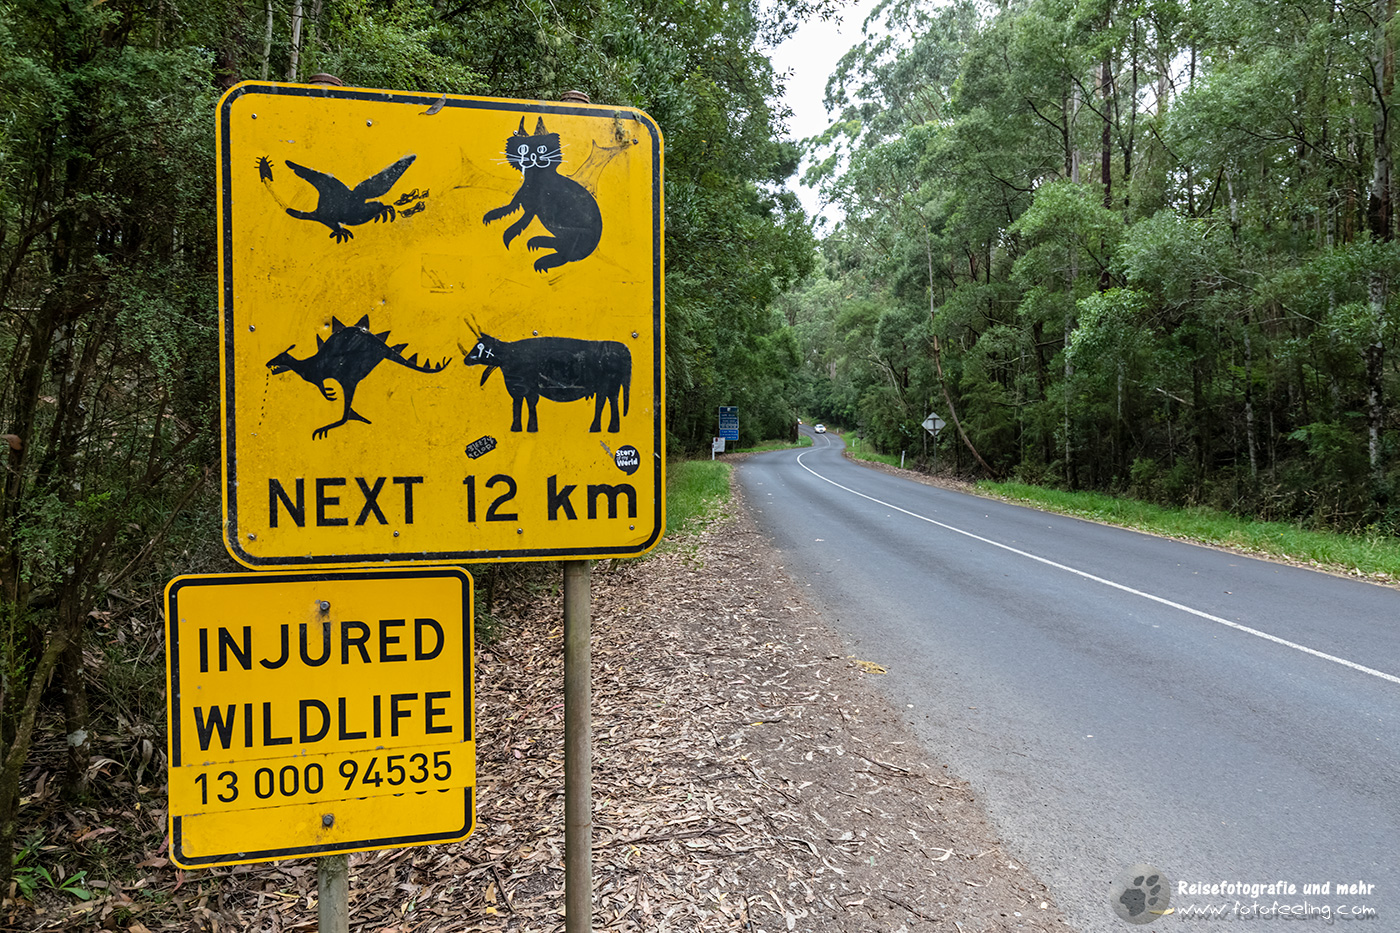 Achtung Wildlife auf den nächsten 12 km